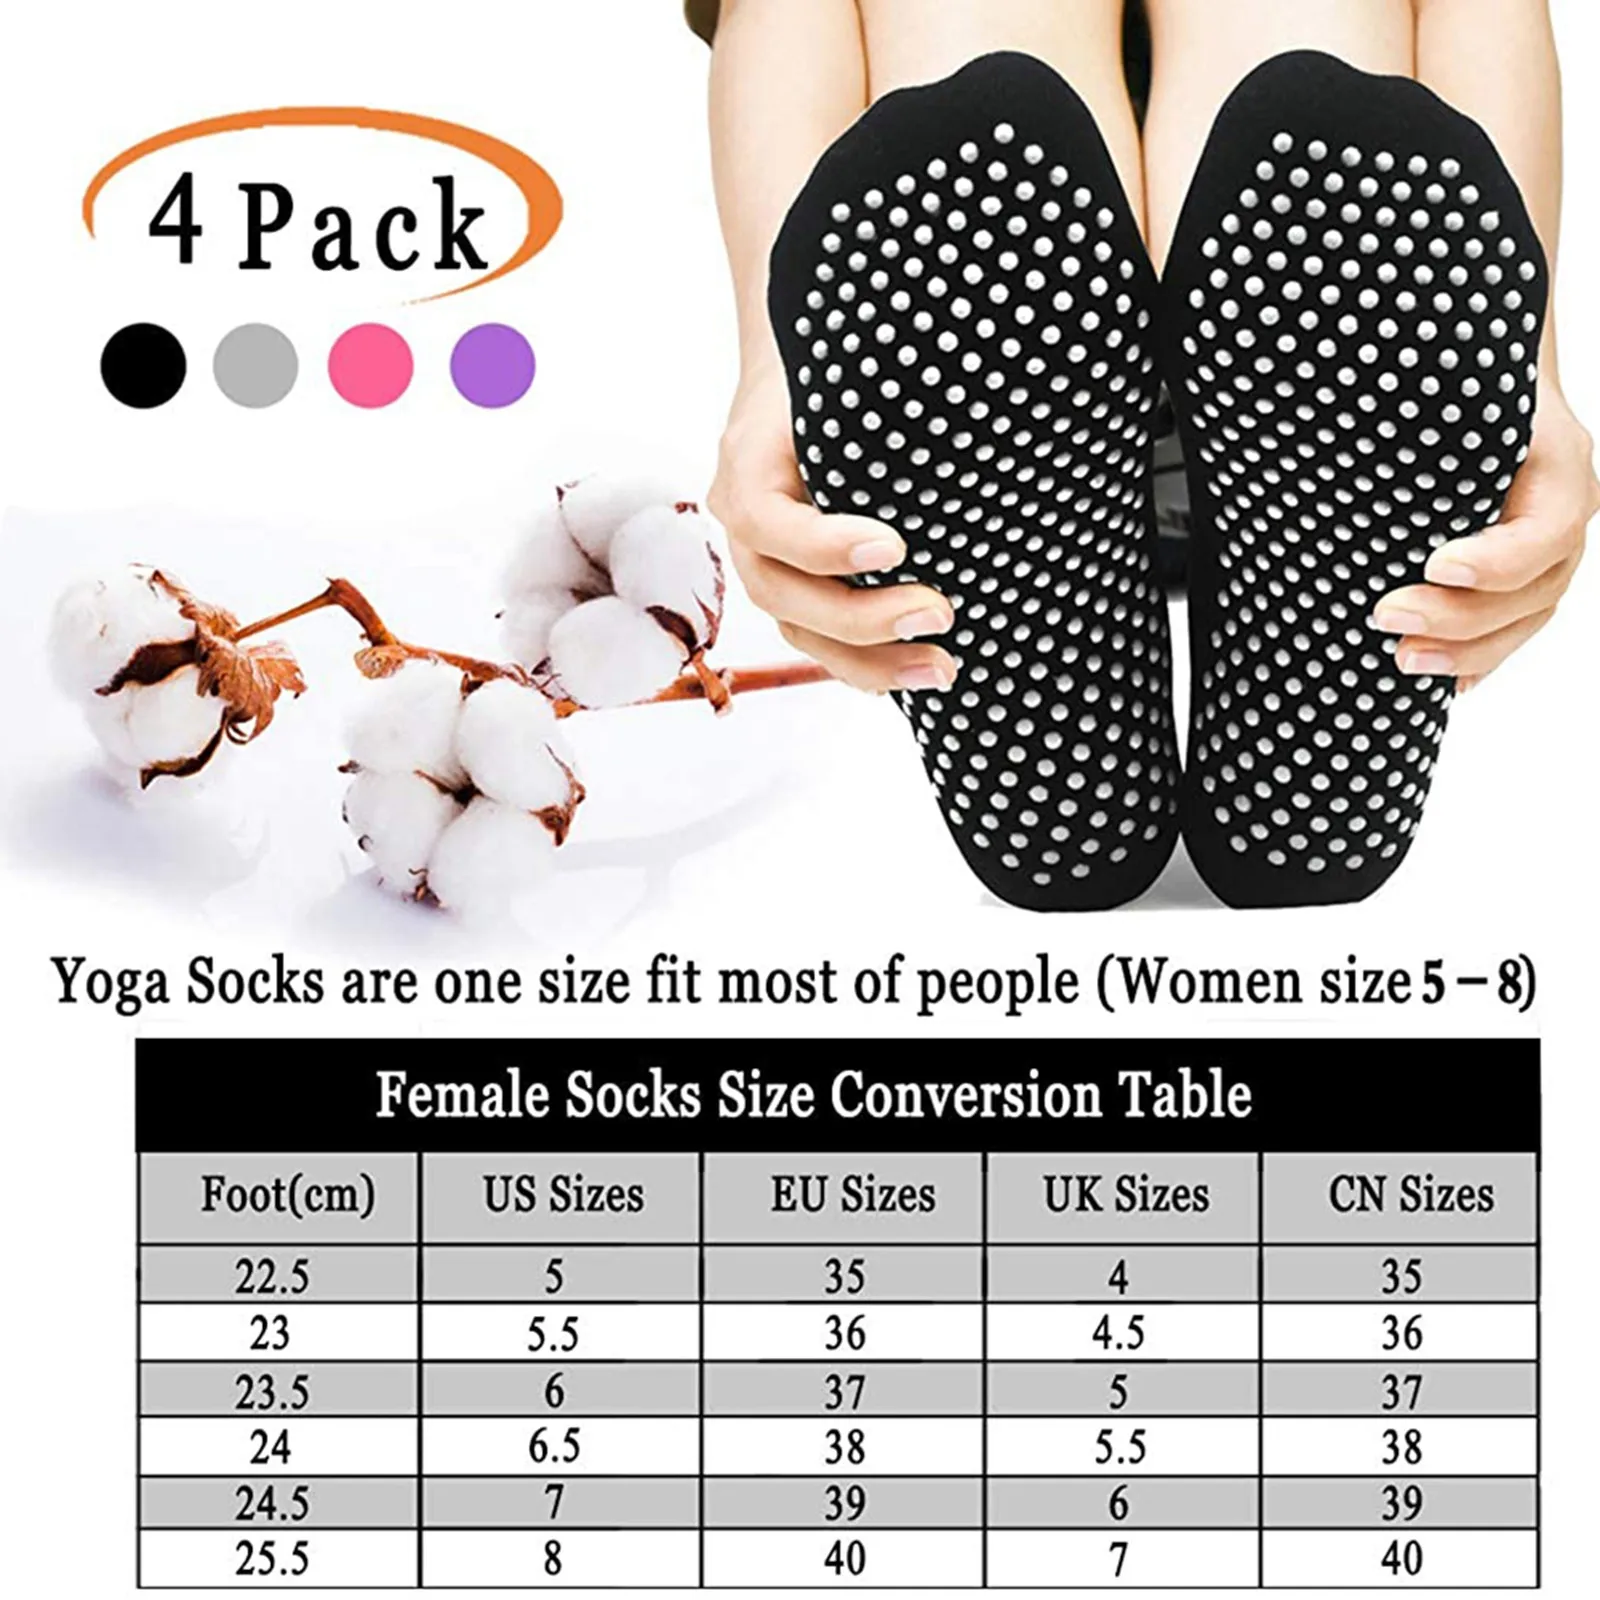 https://ae01.alicdn.com/kf/S81491da298c94edd8d3e5bd1af0c0264e/Trampoline-Socks-Non-Slip-Yoga-Socks-With-Grips-Women-Anti-skid-Socks-Sticky-Grippers-Socks-For.jpg